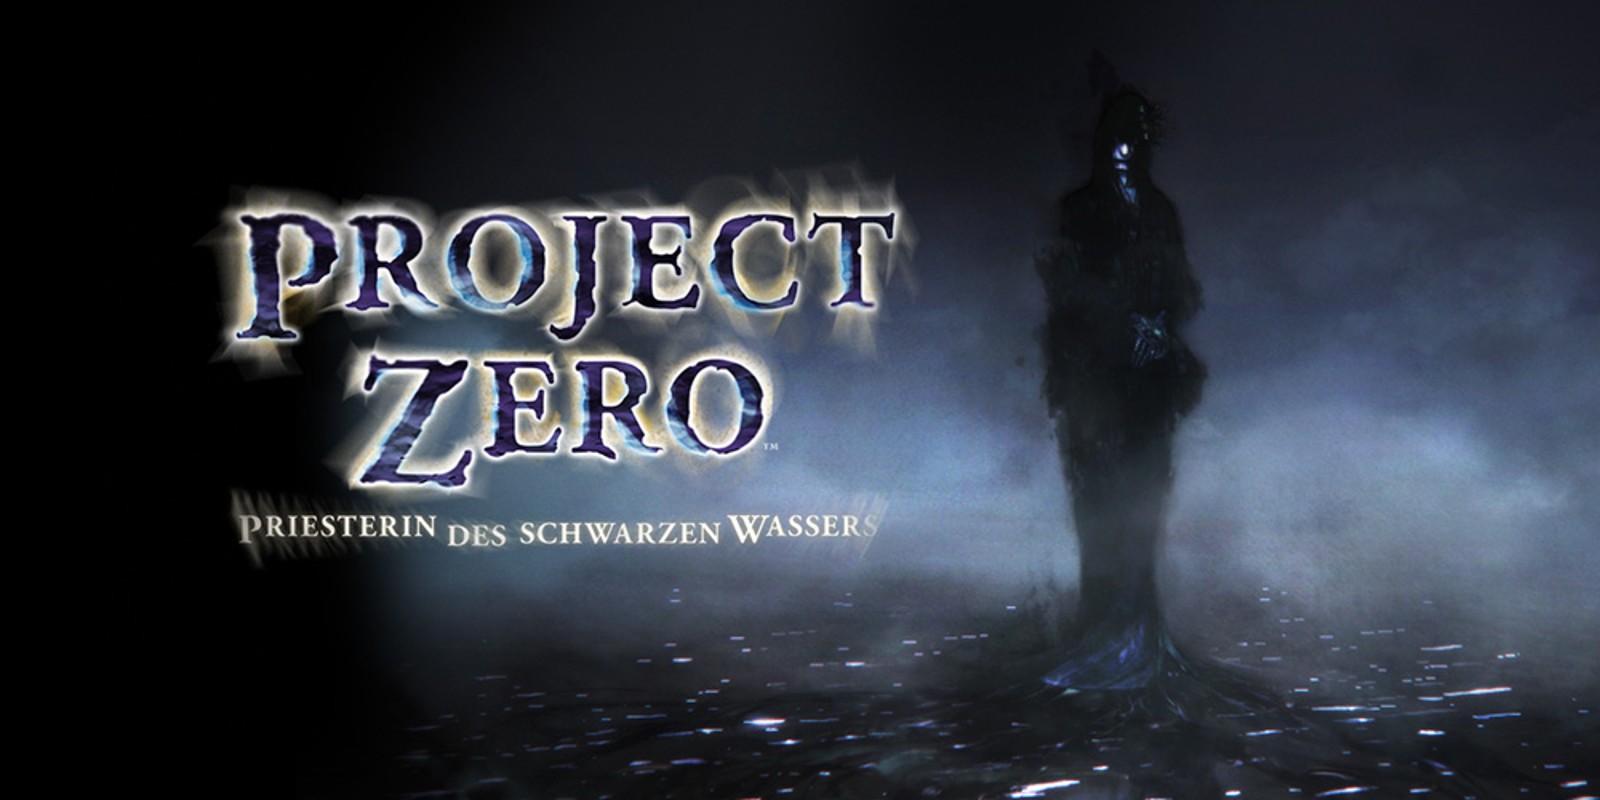 Wii u project zero - Die hochwertigsten Wii u project zero analysiert!